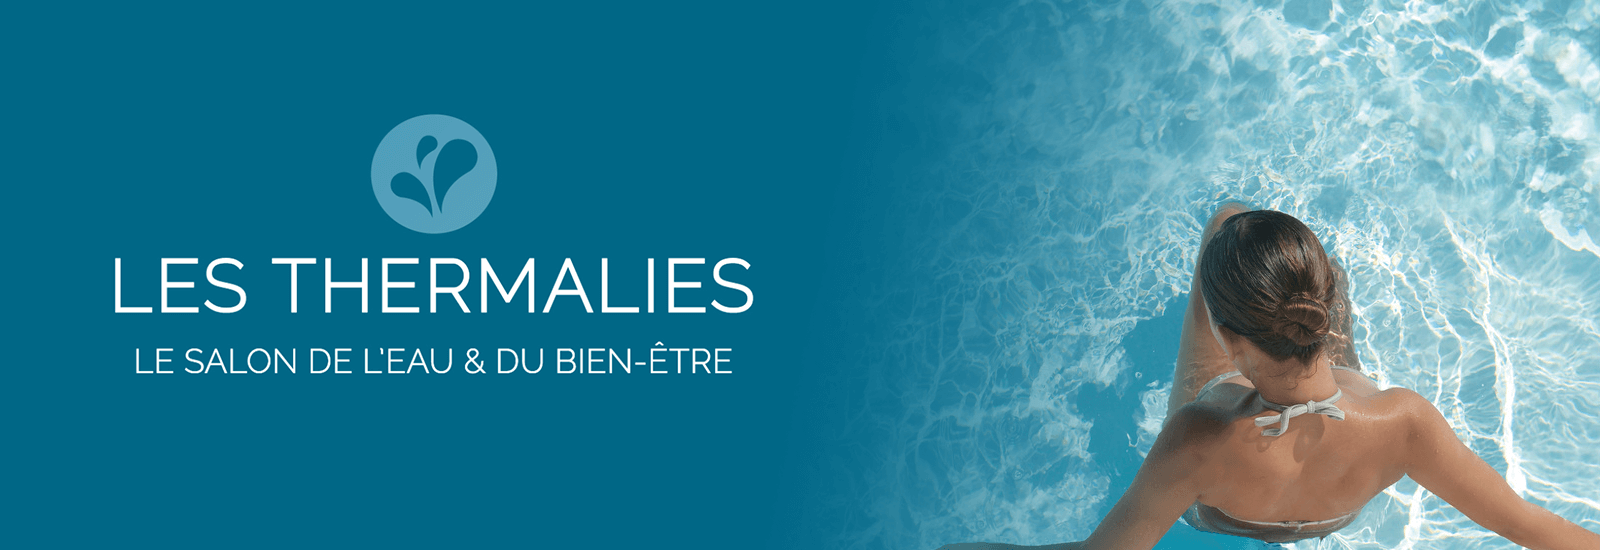 Salon Les Thermalies 2019